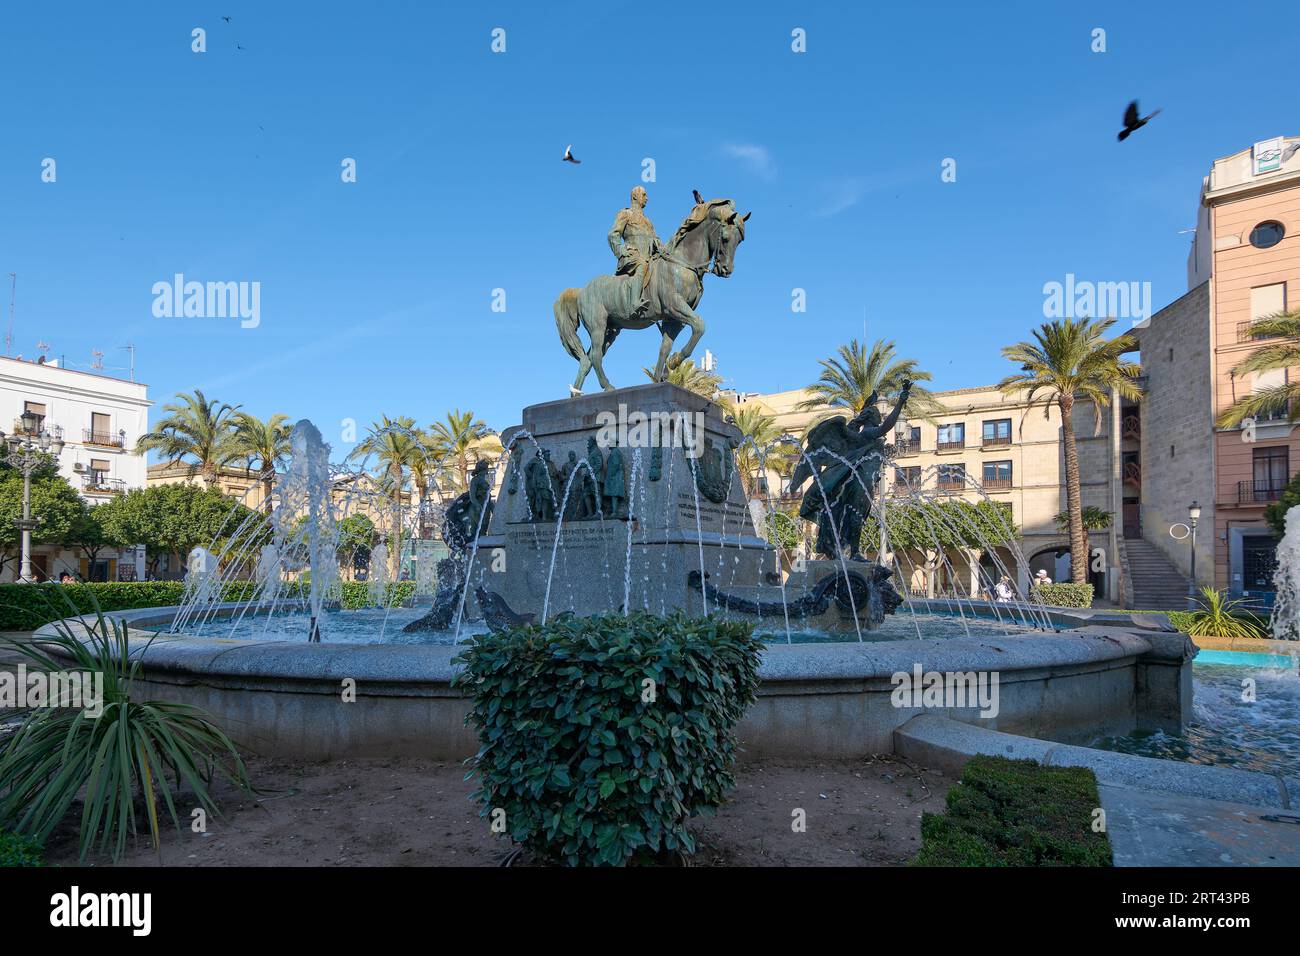 Monument to Miguel Primo de Rivera in the Plaza del Arenal in Jerez de la Frontera, Andalucia, Spain Stock Photo